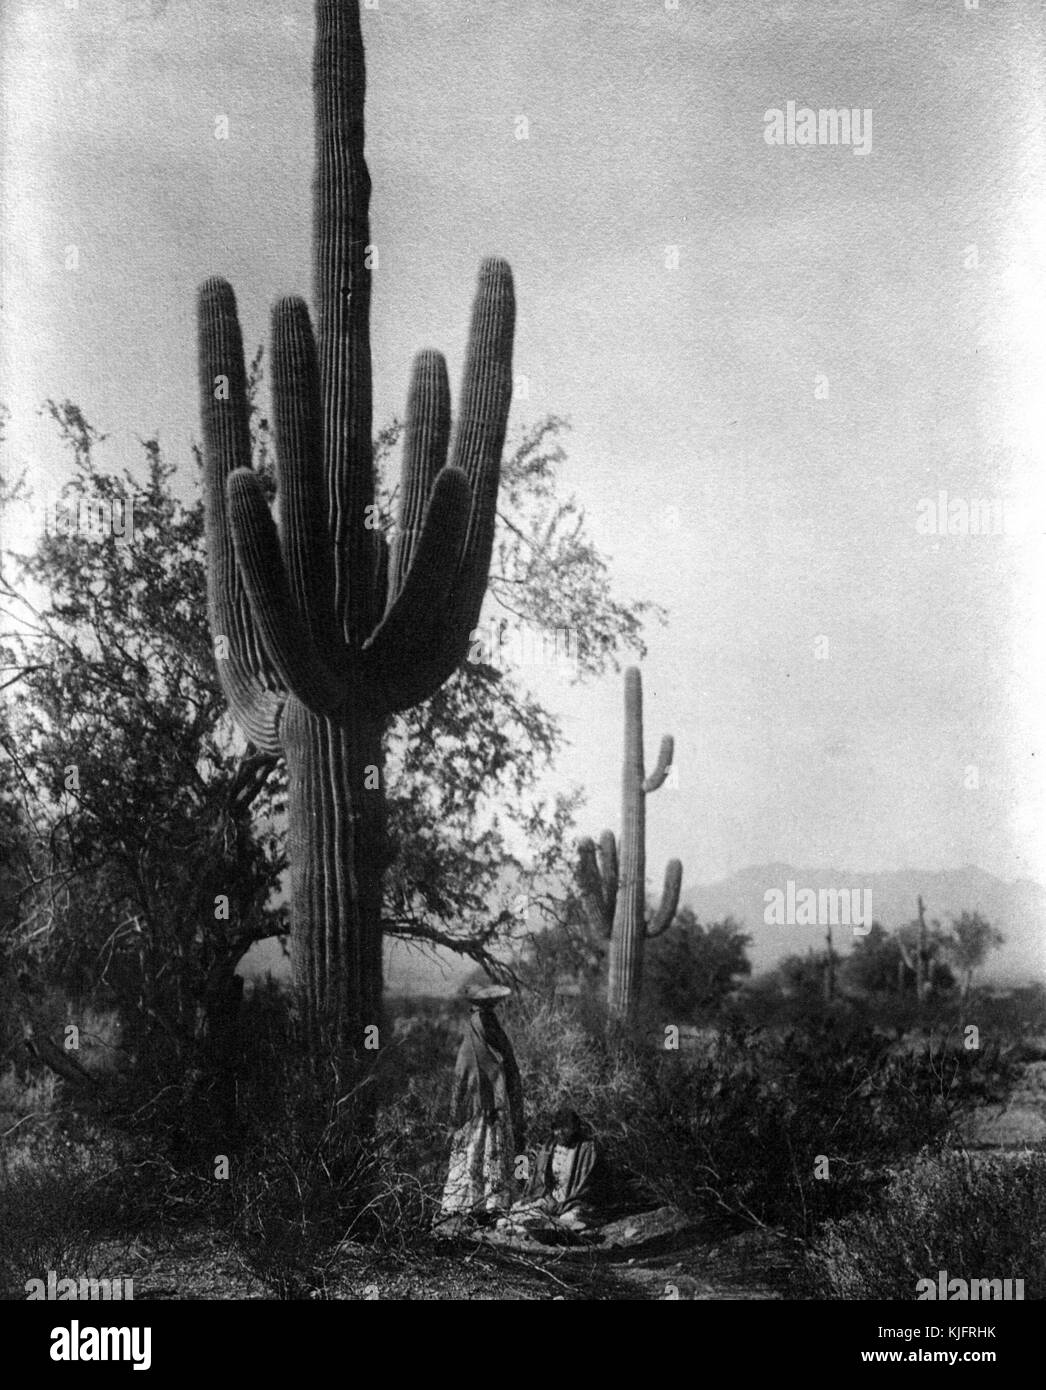 Une photo de deux femmes la récolte les fruits de la saguaro cactus, les deux femmes dans la photographie appartenait à la tribu amérindienne pima, le fruit du cactus était soit mangé ou réalisés dans d'une boisson fermentée utilisée dans les cérémonies, les Pimas de personnes vivent dans le centre et le sud de l'Arizona, 1907. à partir de la bibliothèque publique de new york. Banque D'Images